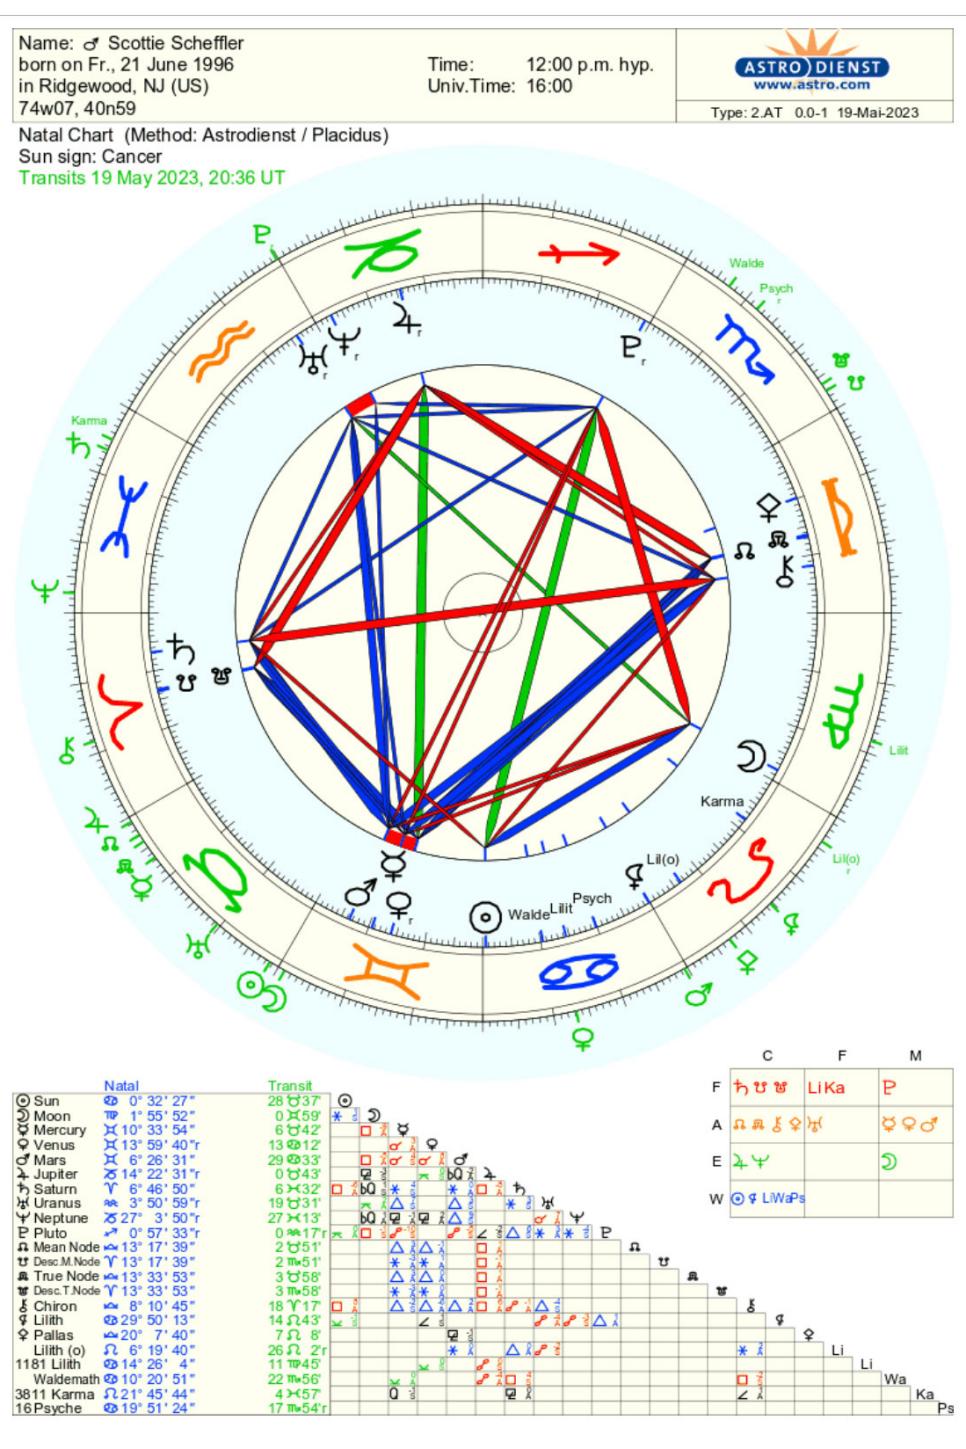 /content/dam/images/golfdigest/fullset/2023/5/Scottie-Sheffler-astrological-chart.jpg